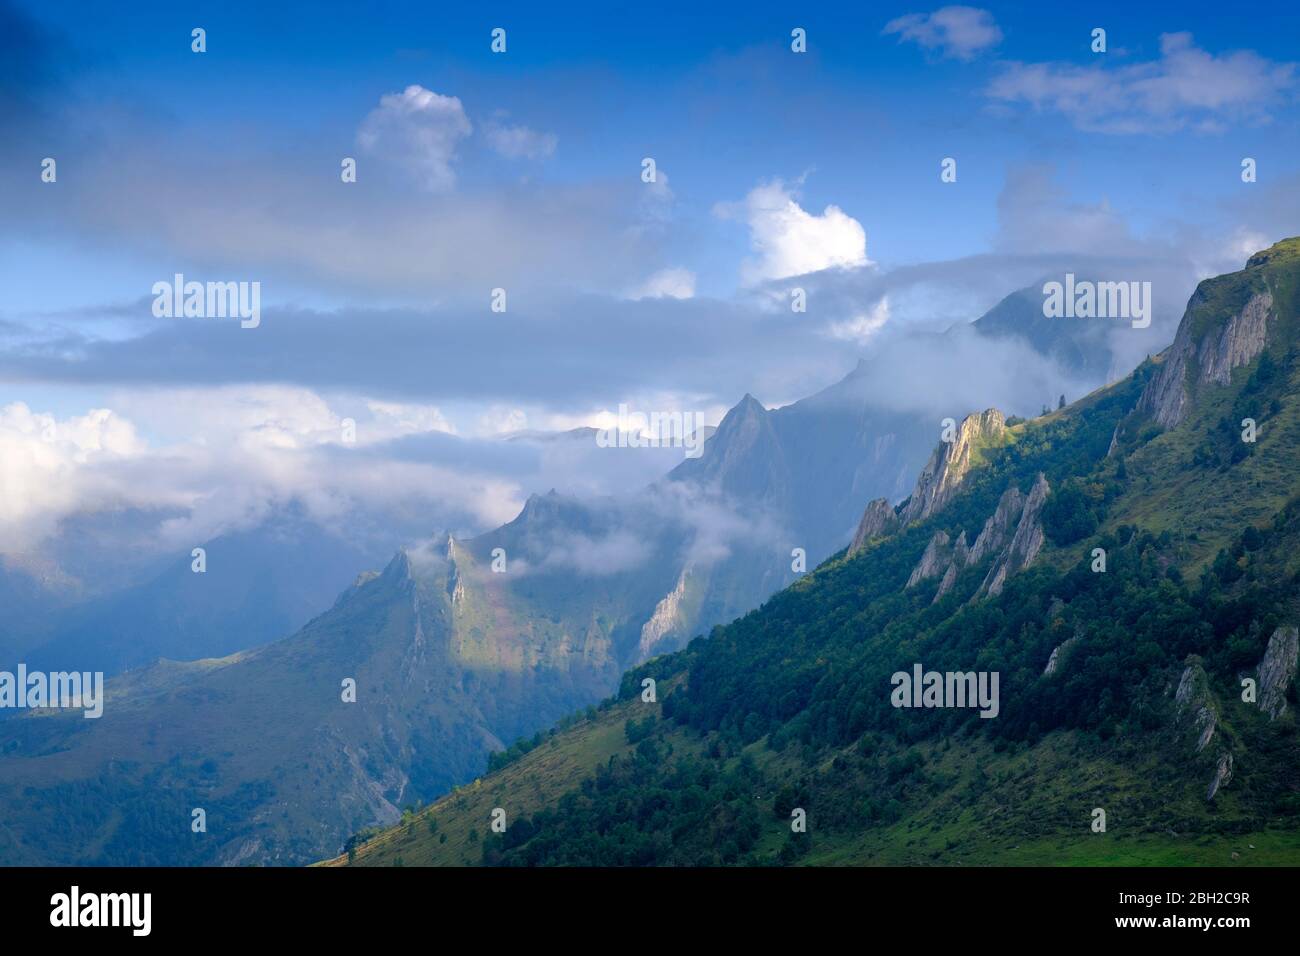 Francia, Altos Pirineos, paisaje montañoso escénico entre Col du Soulor y los pasos de montaña Col dAubisque Foto de stock